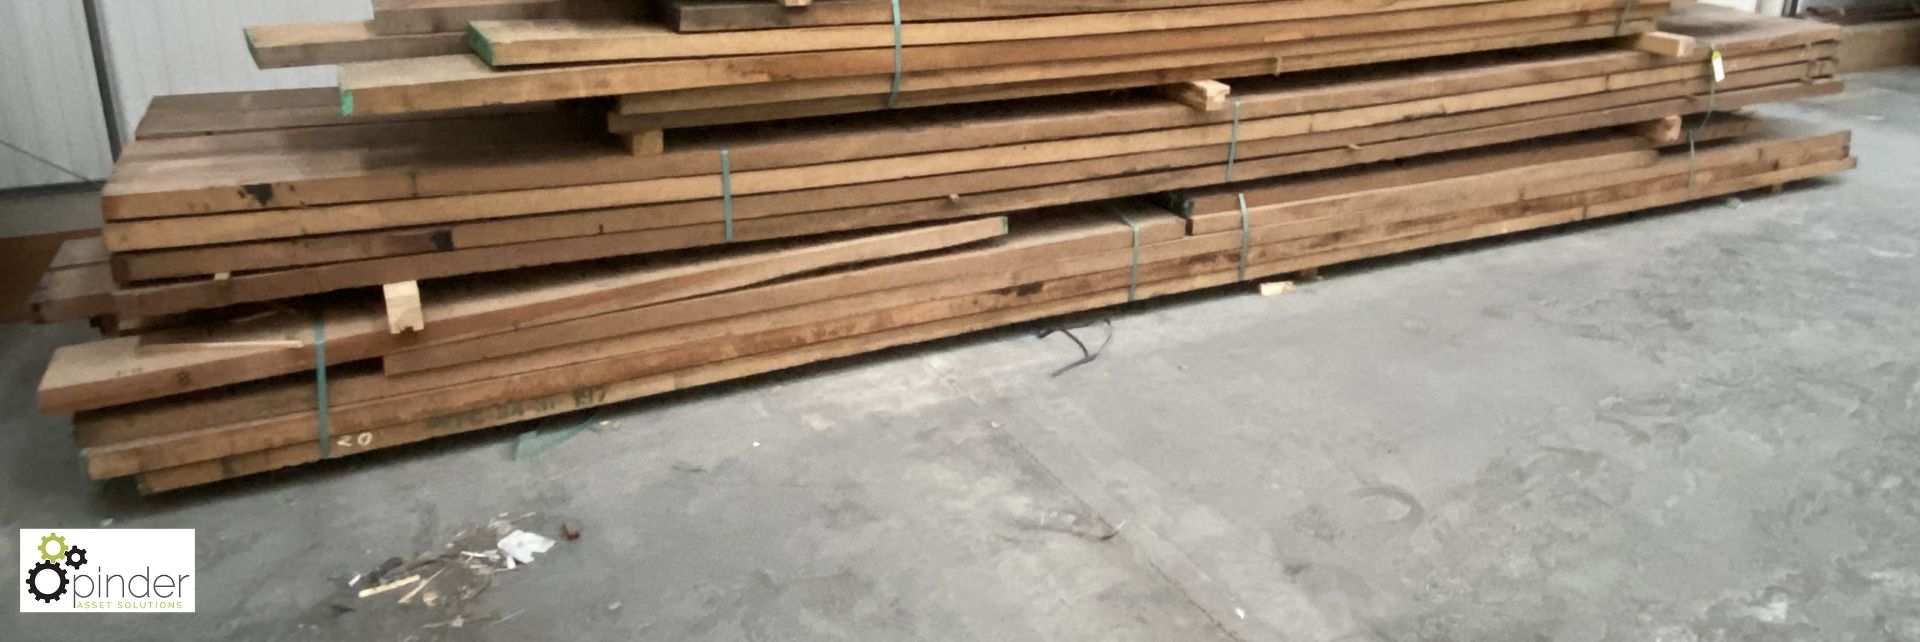 16 lengths Keruing Hardwood, 230mm wide x 50mm deep x 5750mm long; 8 lengths Keruing Hardwood, 230mm